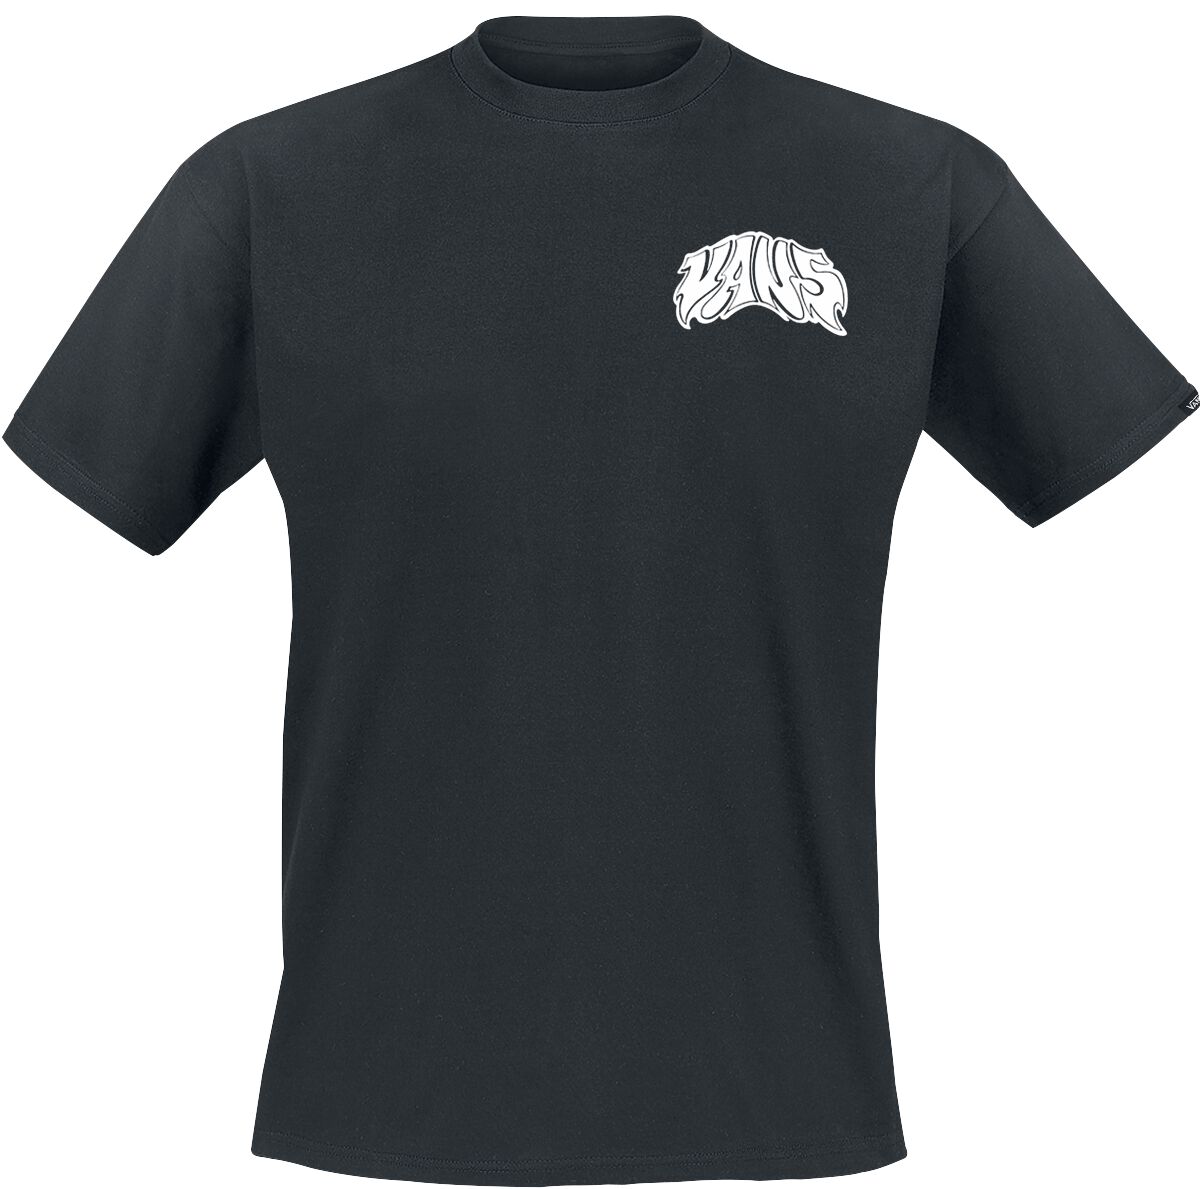 Vans T-Shirt - Prowler Tee - S bis XXL - für Männer - Größe XXL - schwarz